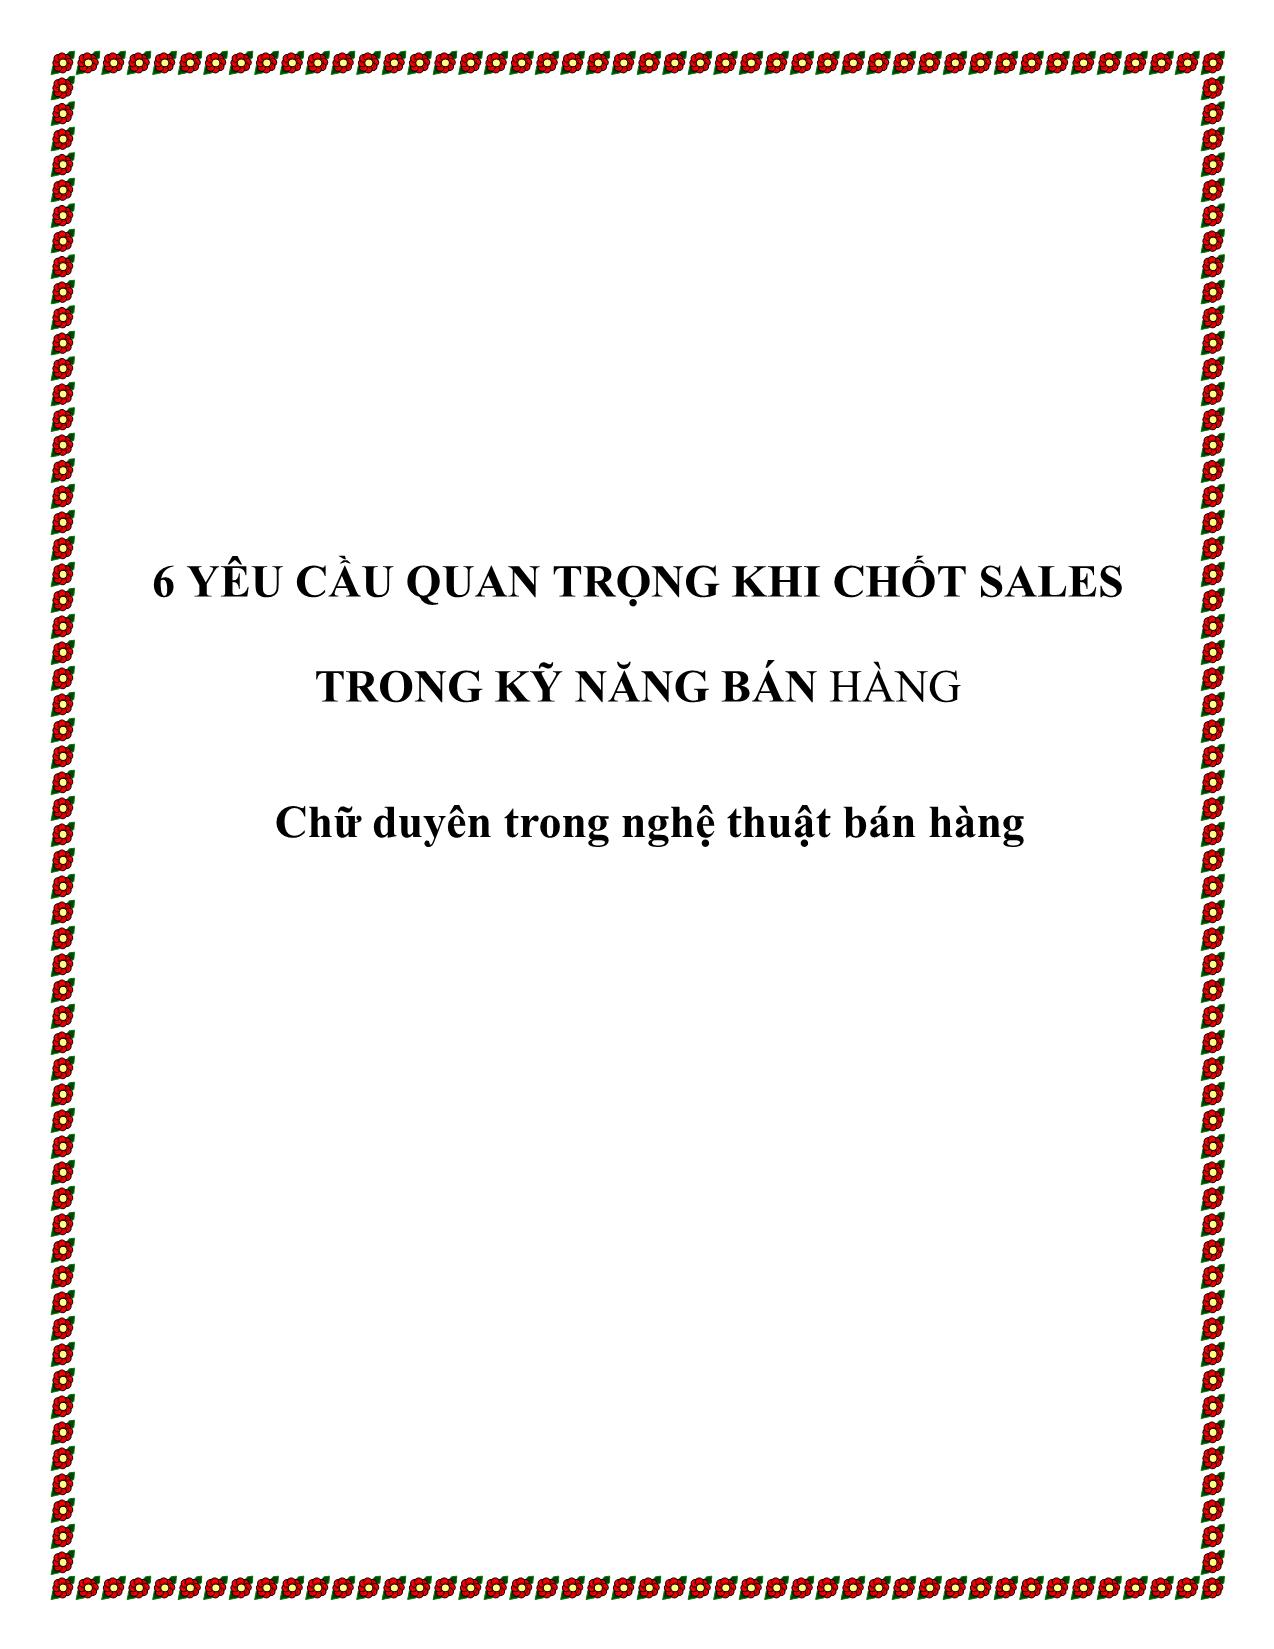 Tài liệu 6 yêu cầu quan trọng khi chốt sales trong kỹ năng bán hàng - Chữ duyên trong nghệ thuật bán hàng trang 1